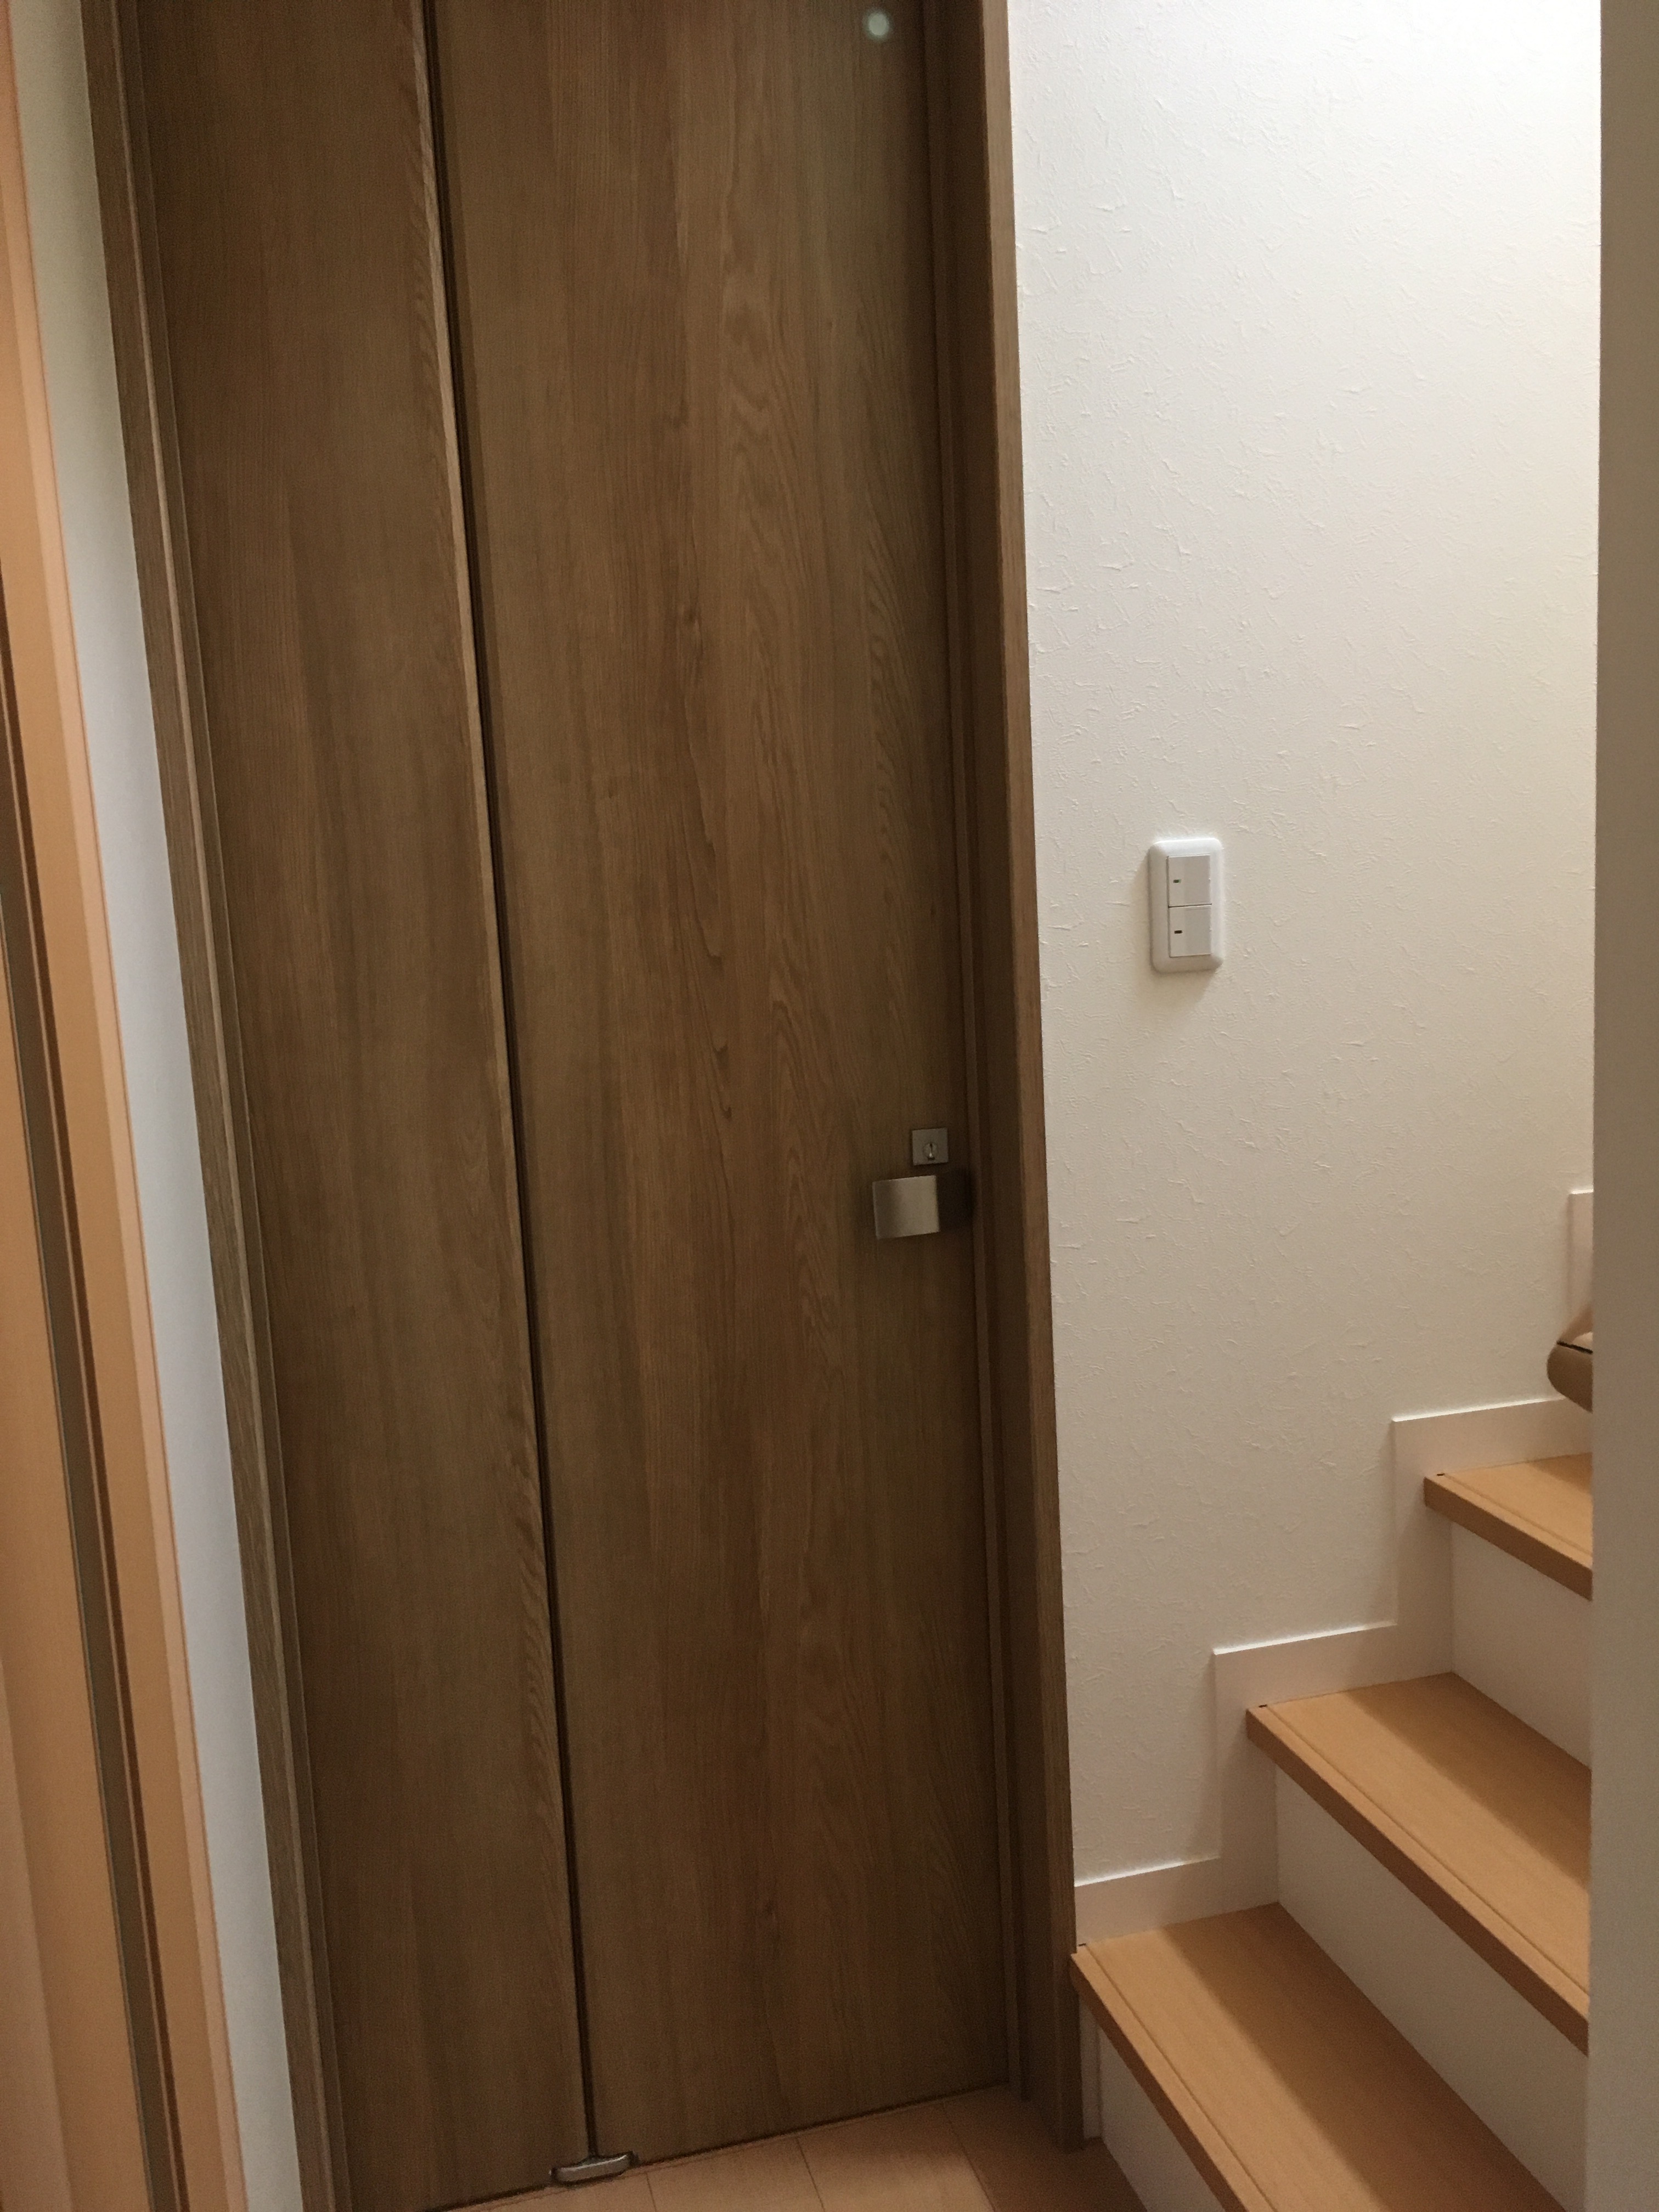 【画像あり】我が家のトイレは折れ戸を採用。パナソニックのベリティスの折れ戸タイプ、気に入っています♪ My Home